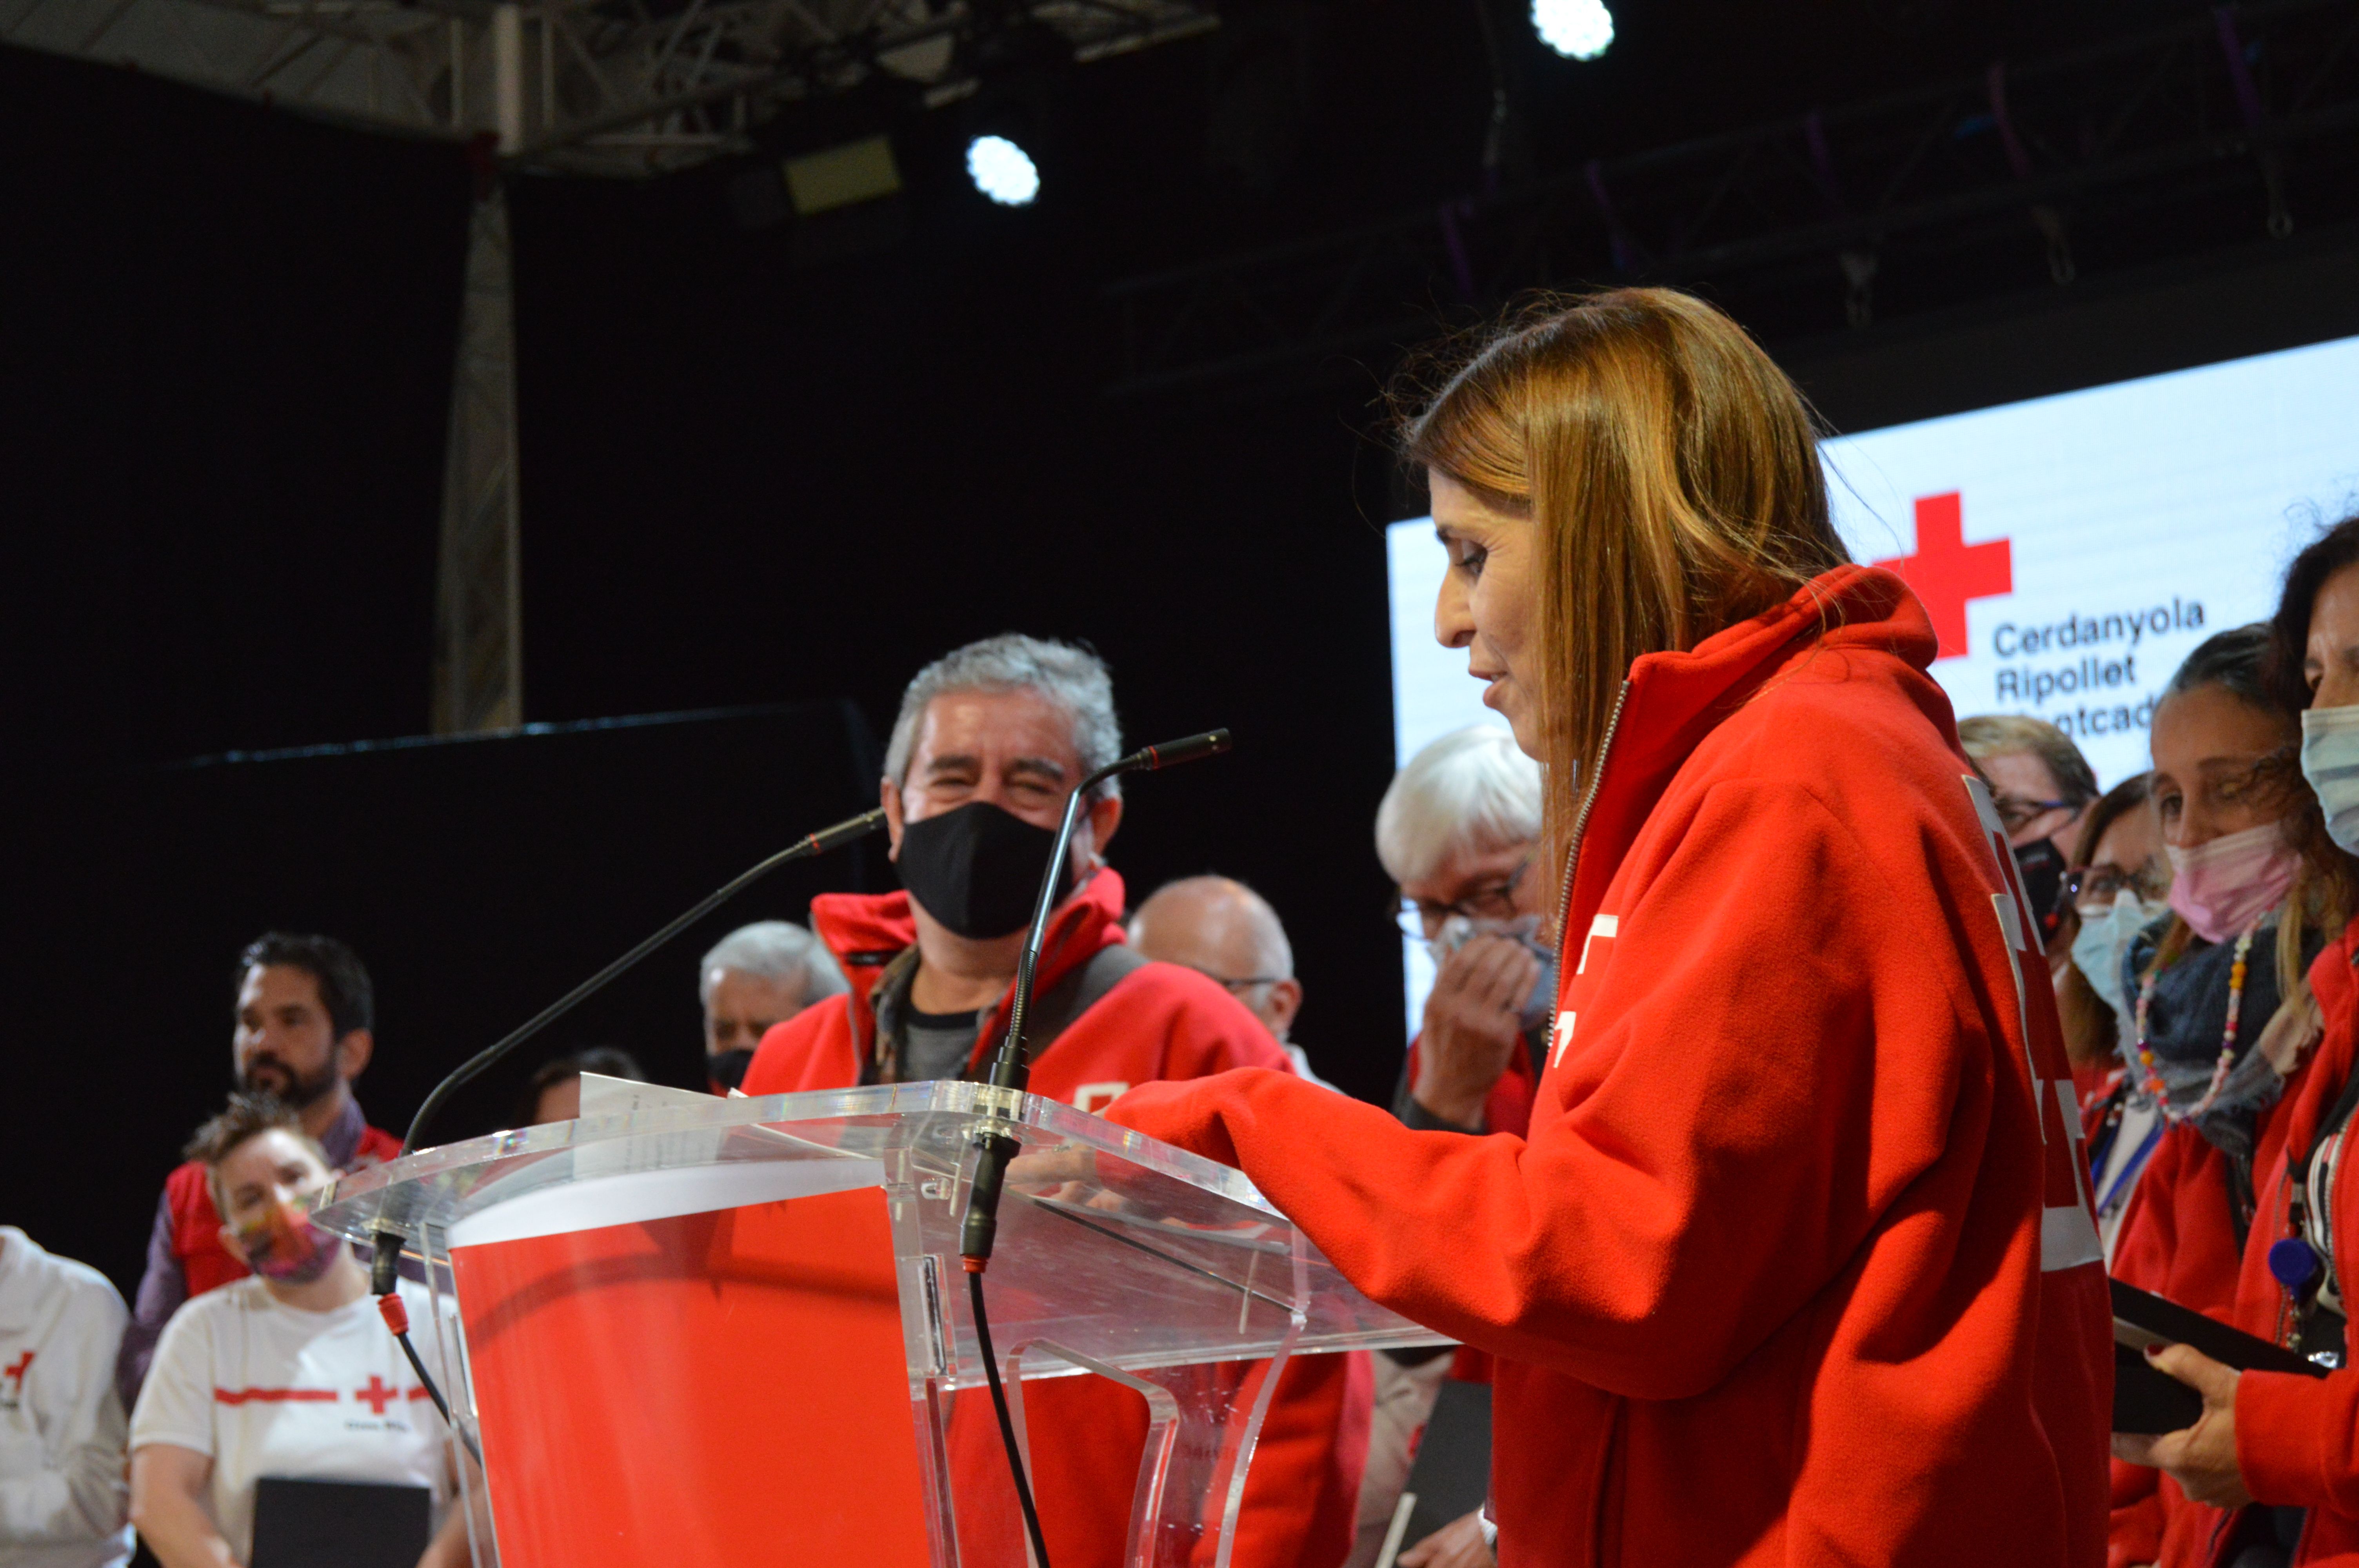 En l'acte s'ha fet un homenatge especial al membre de l'equip tècnic Manolo Martínez, que deixa la Creu Roja enguany. FOTO: Nora Muñoz Otero